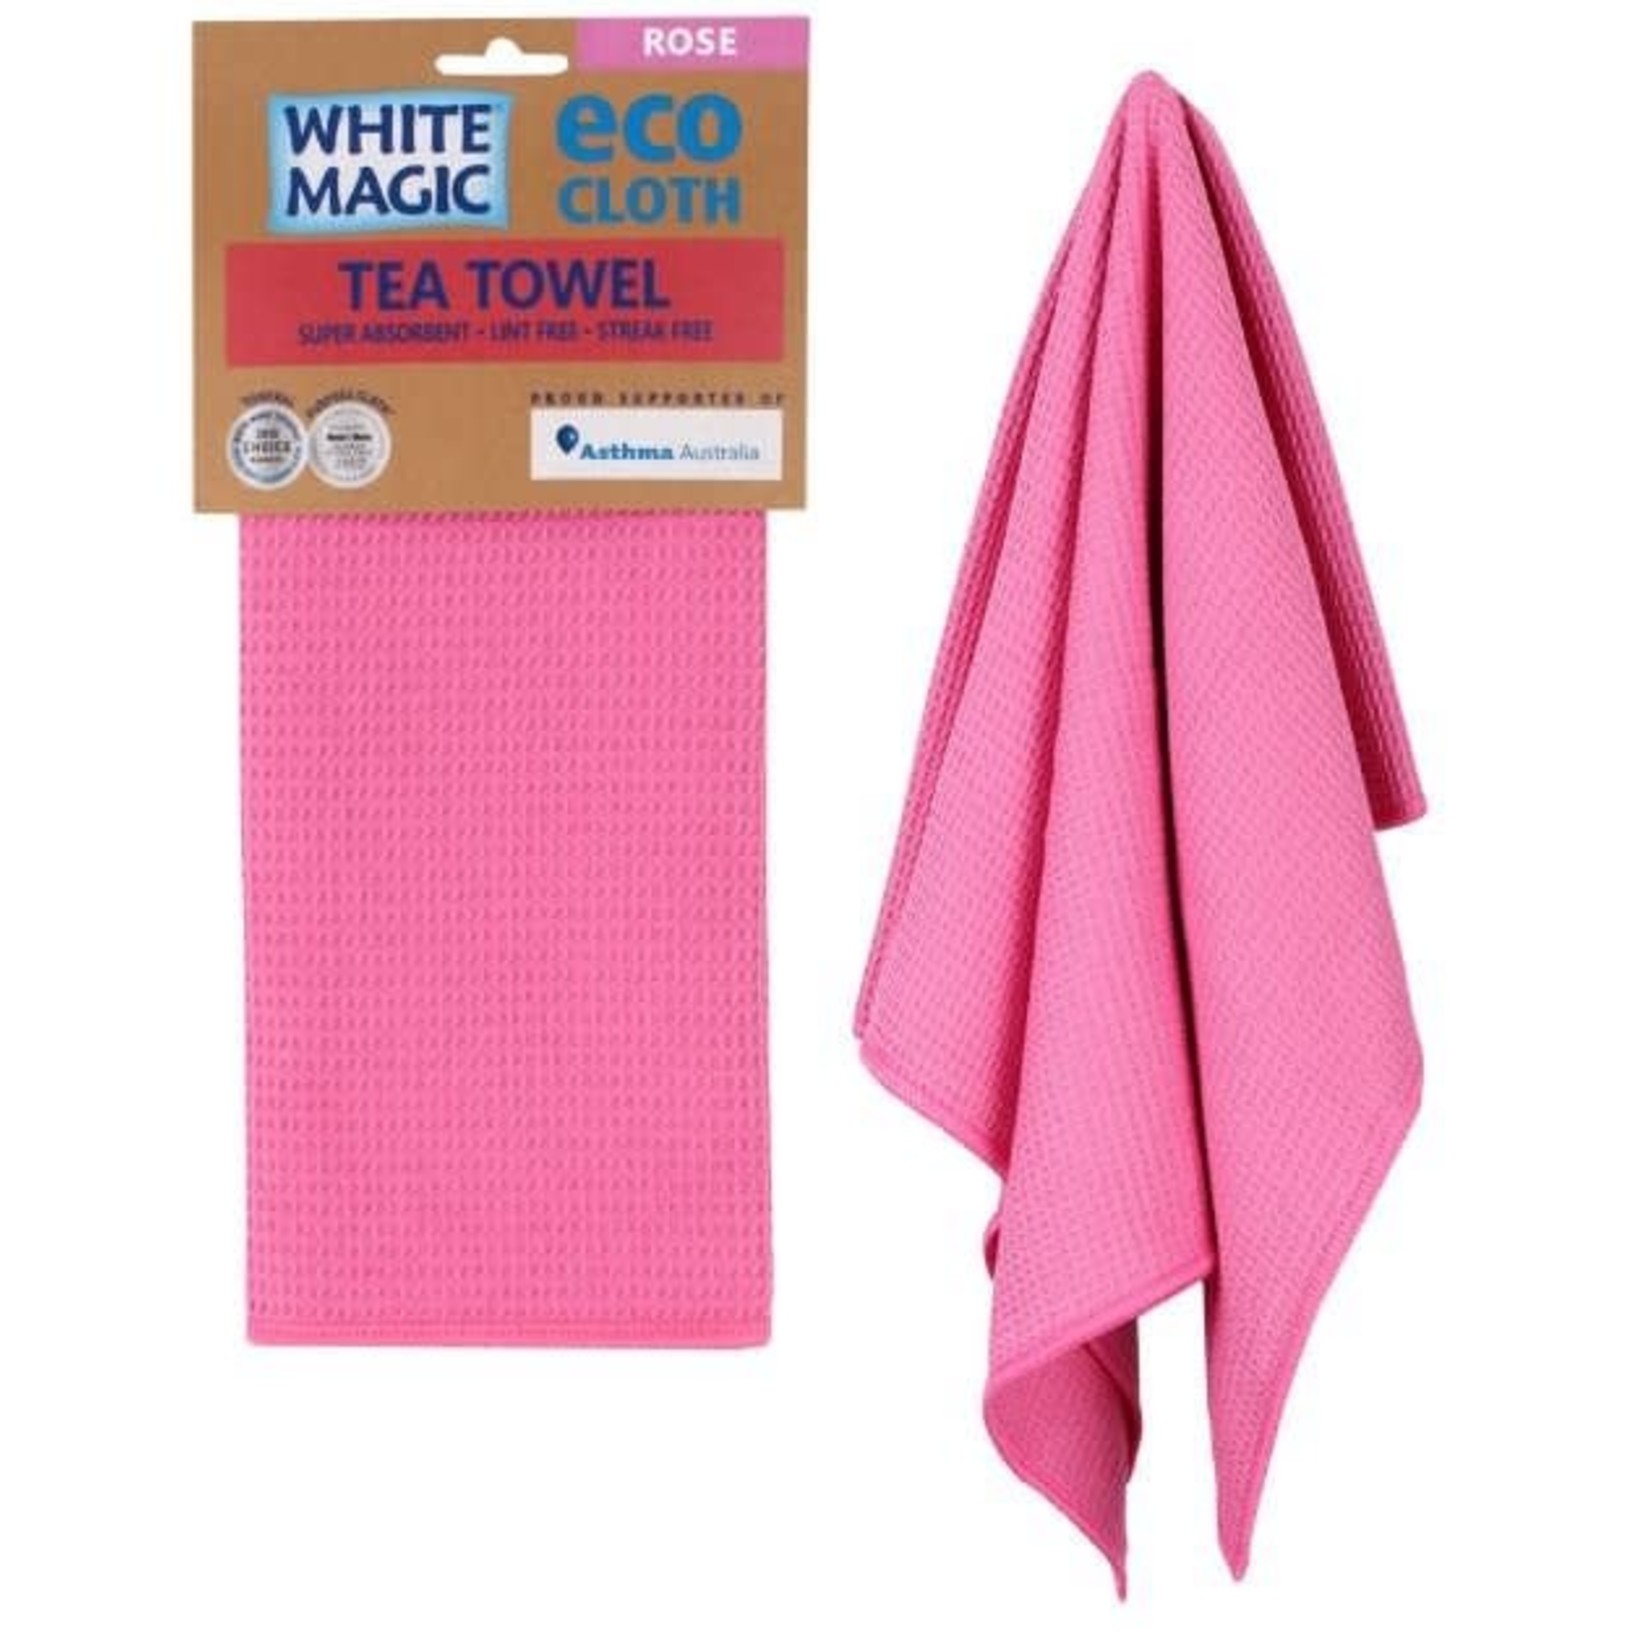 White Magic White Magic Eco Cloth Tea Towel